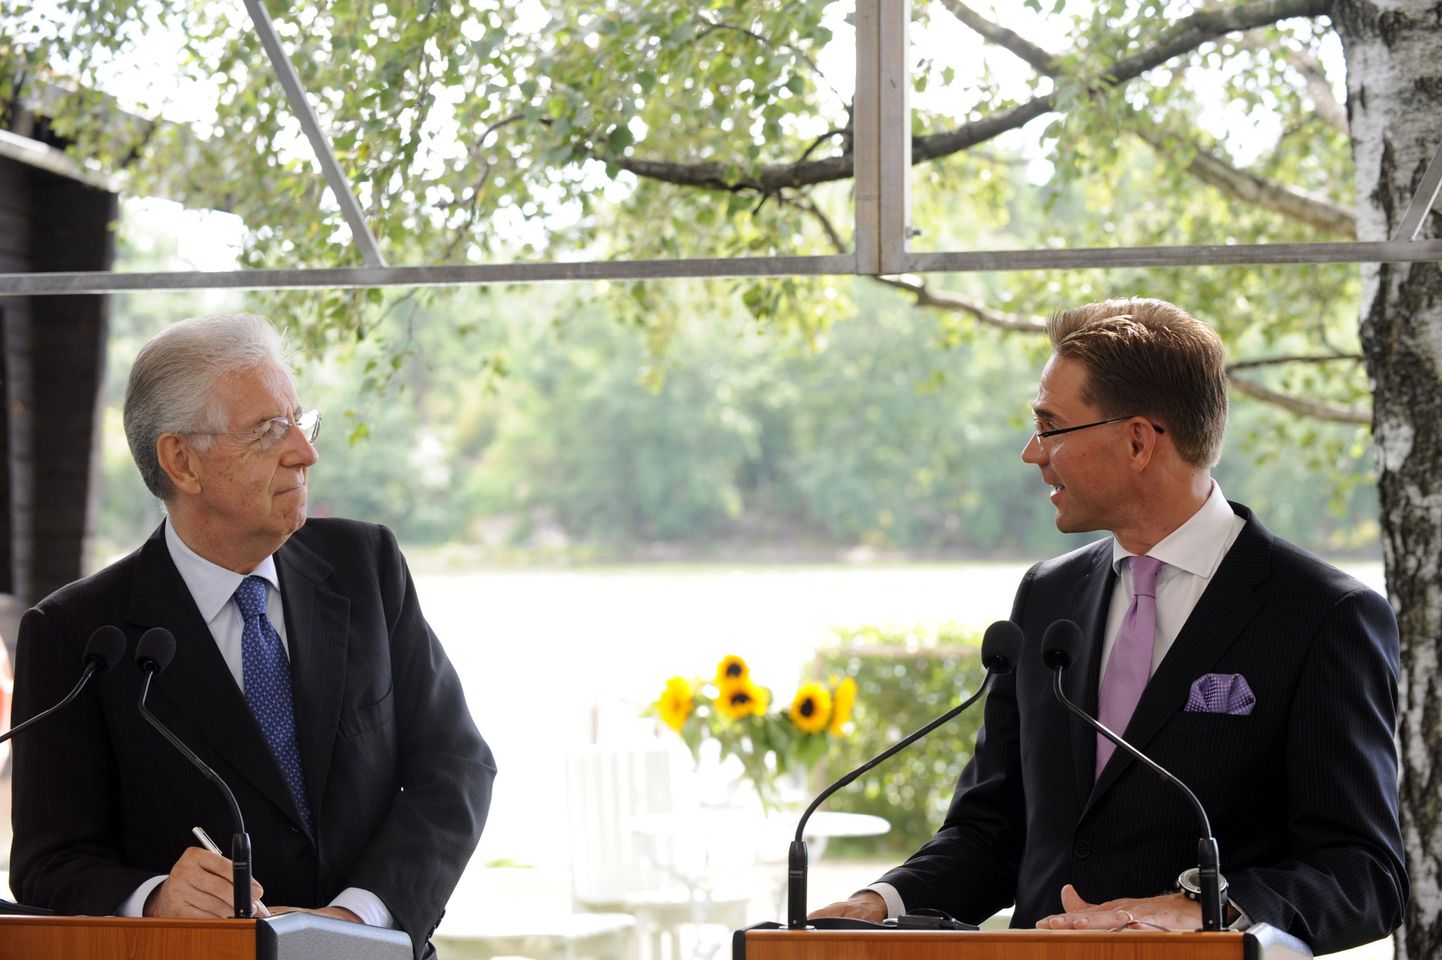 Soome peaminister Jyrki Katainen (paremal) võõrustas eelmisel nädalal Itaalia ametivenda Mario Montit Helsingis.